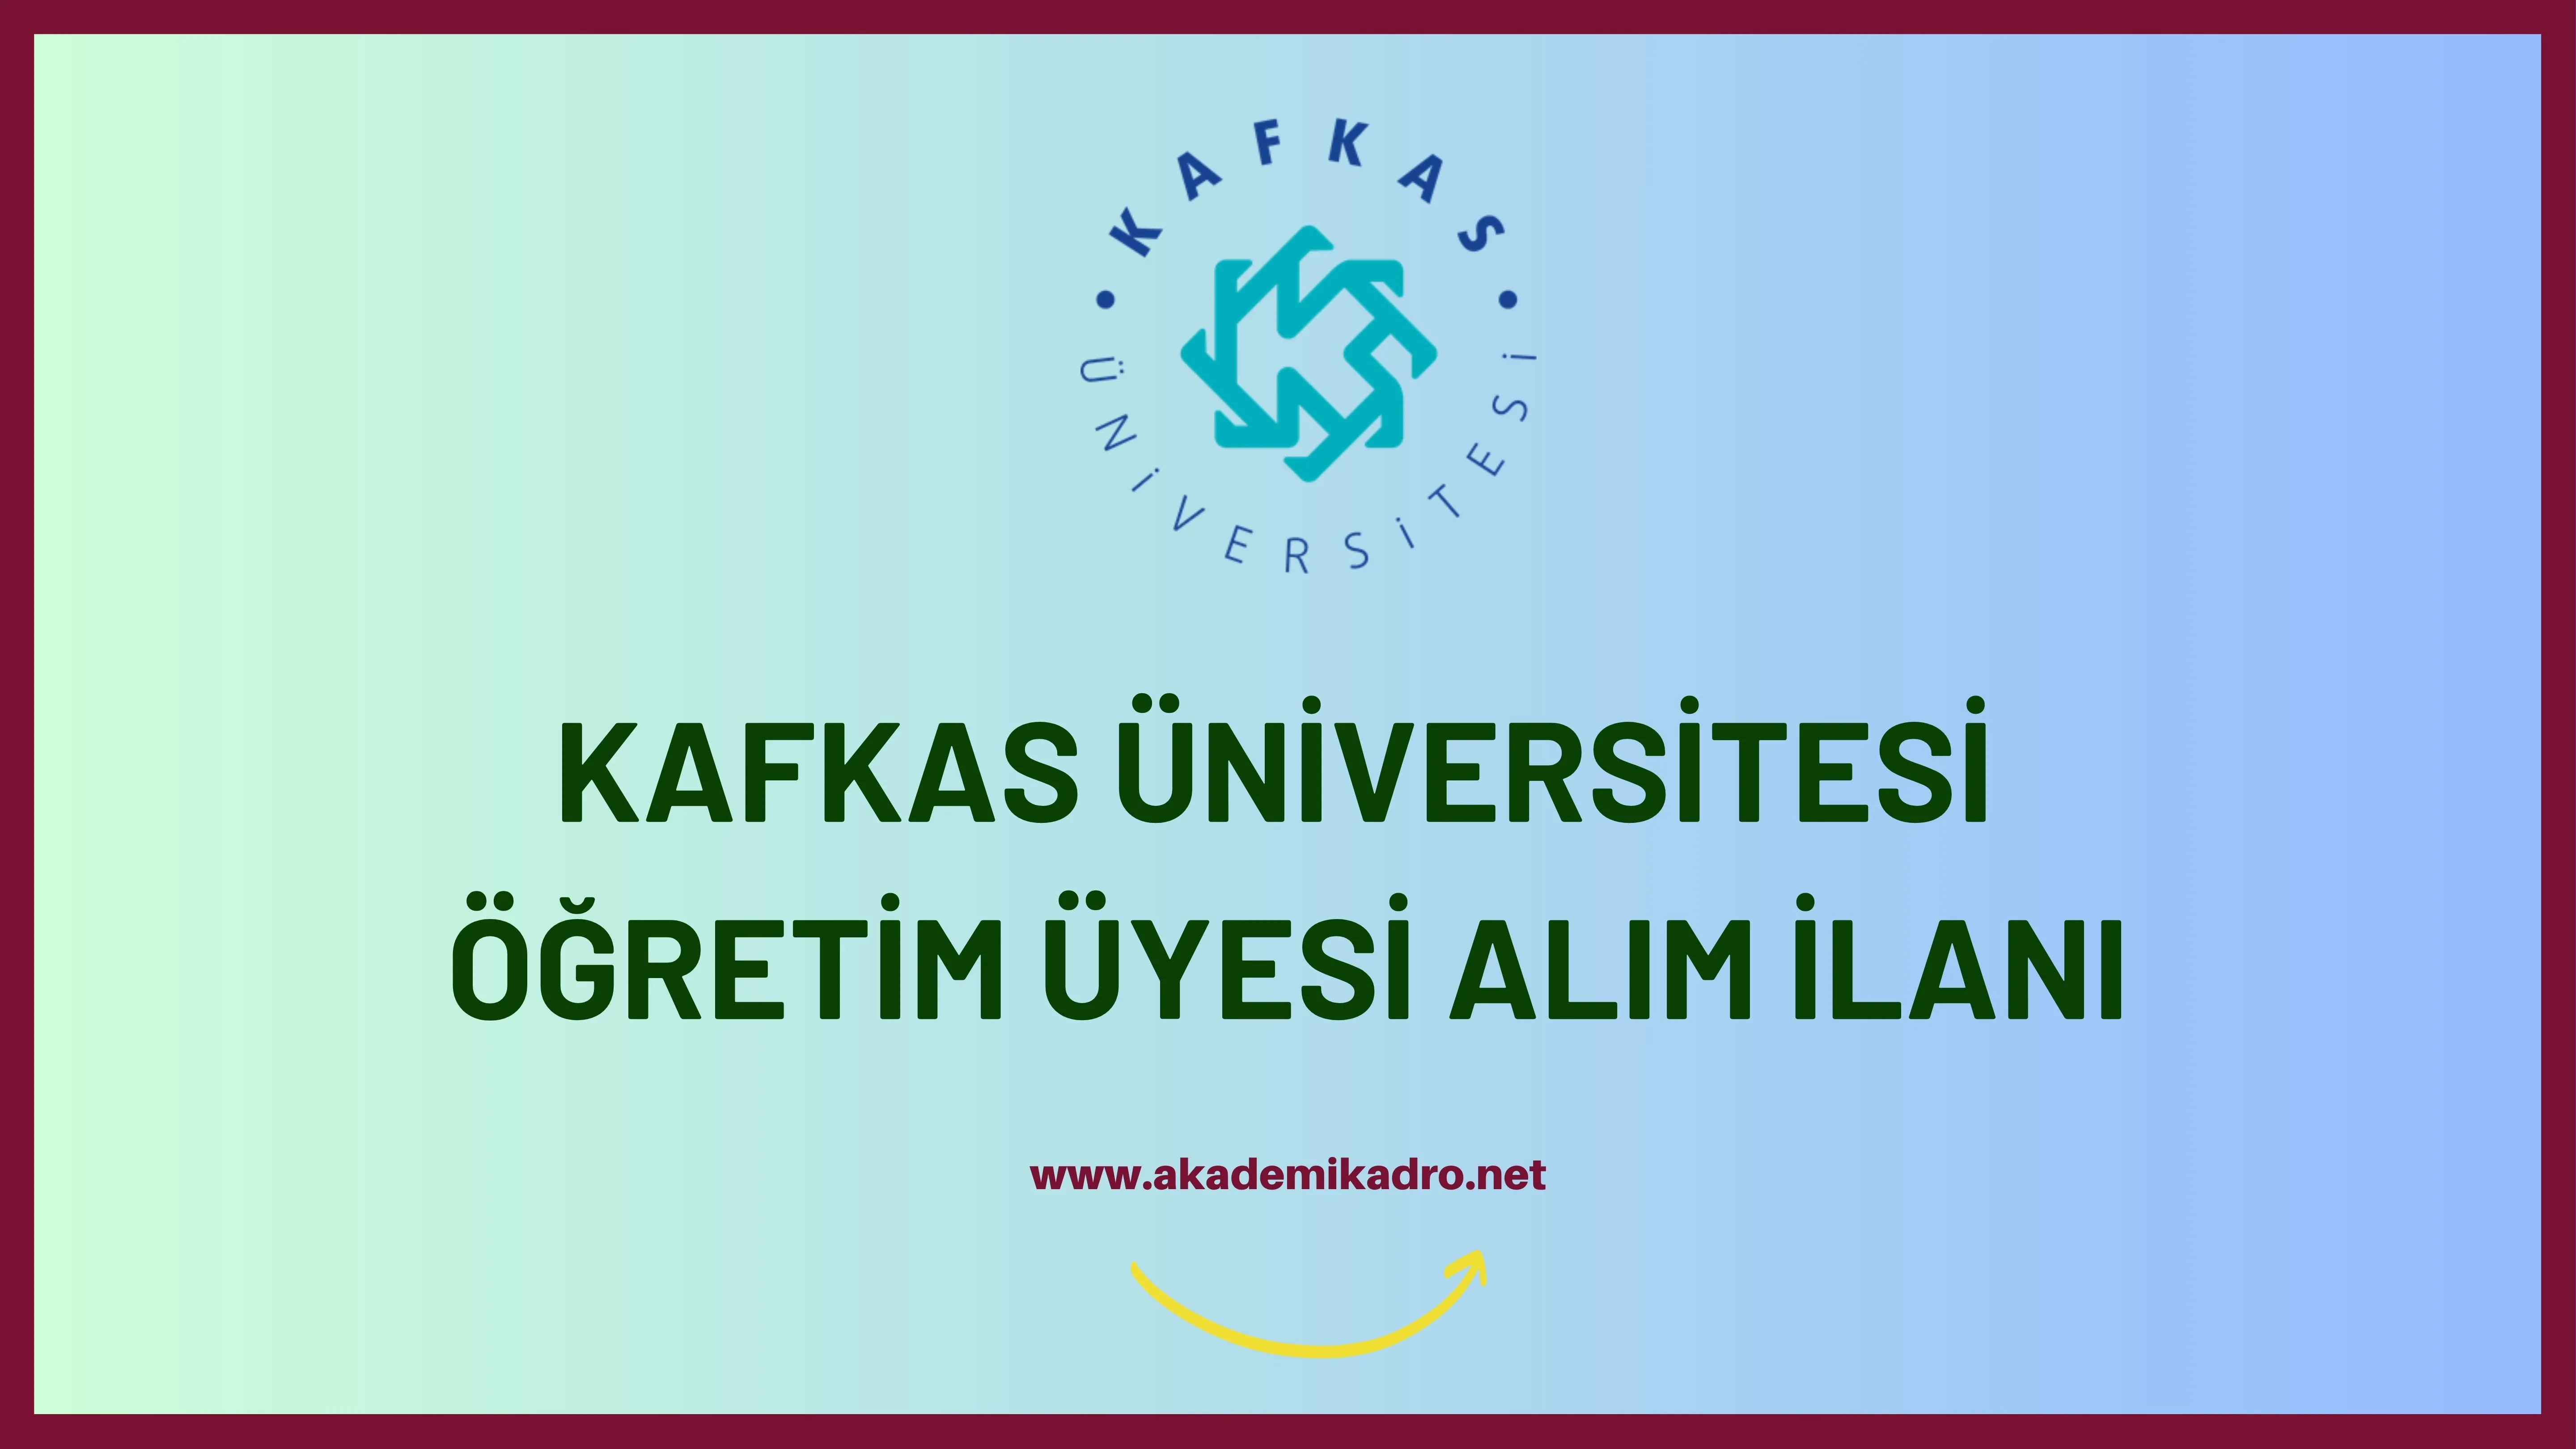 Kafkas Üniversitesi birçok alandan 39 akademik personel alacak.